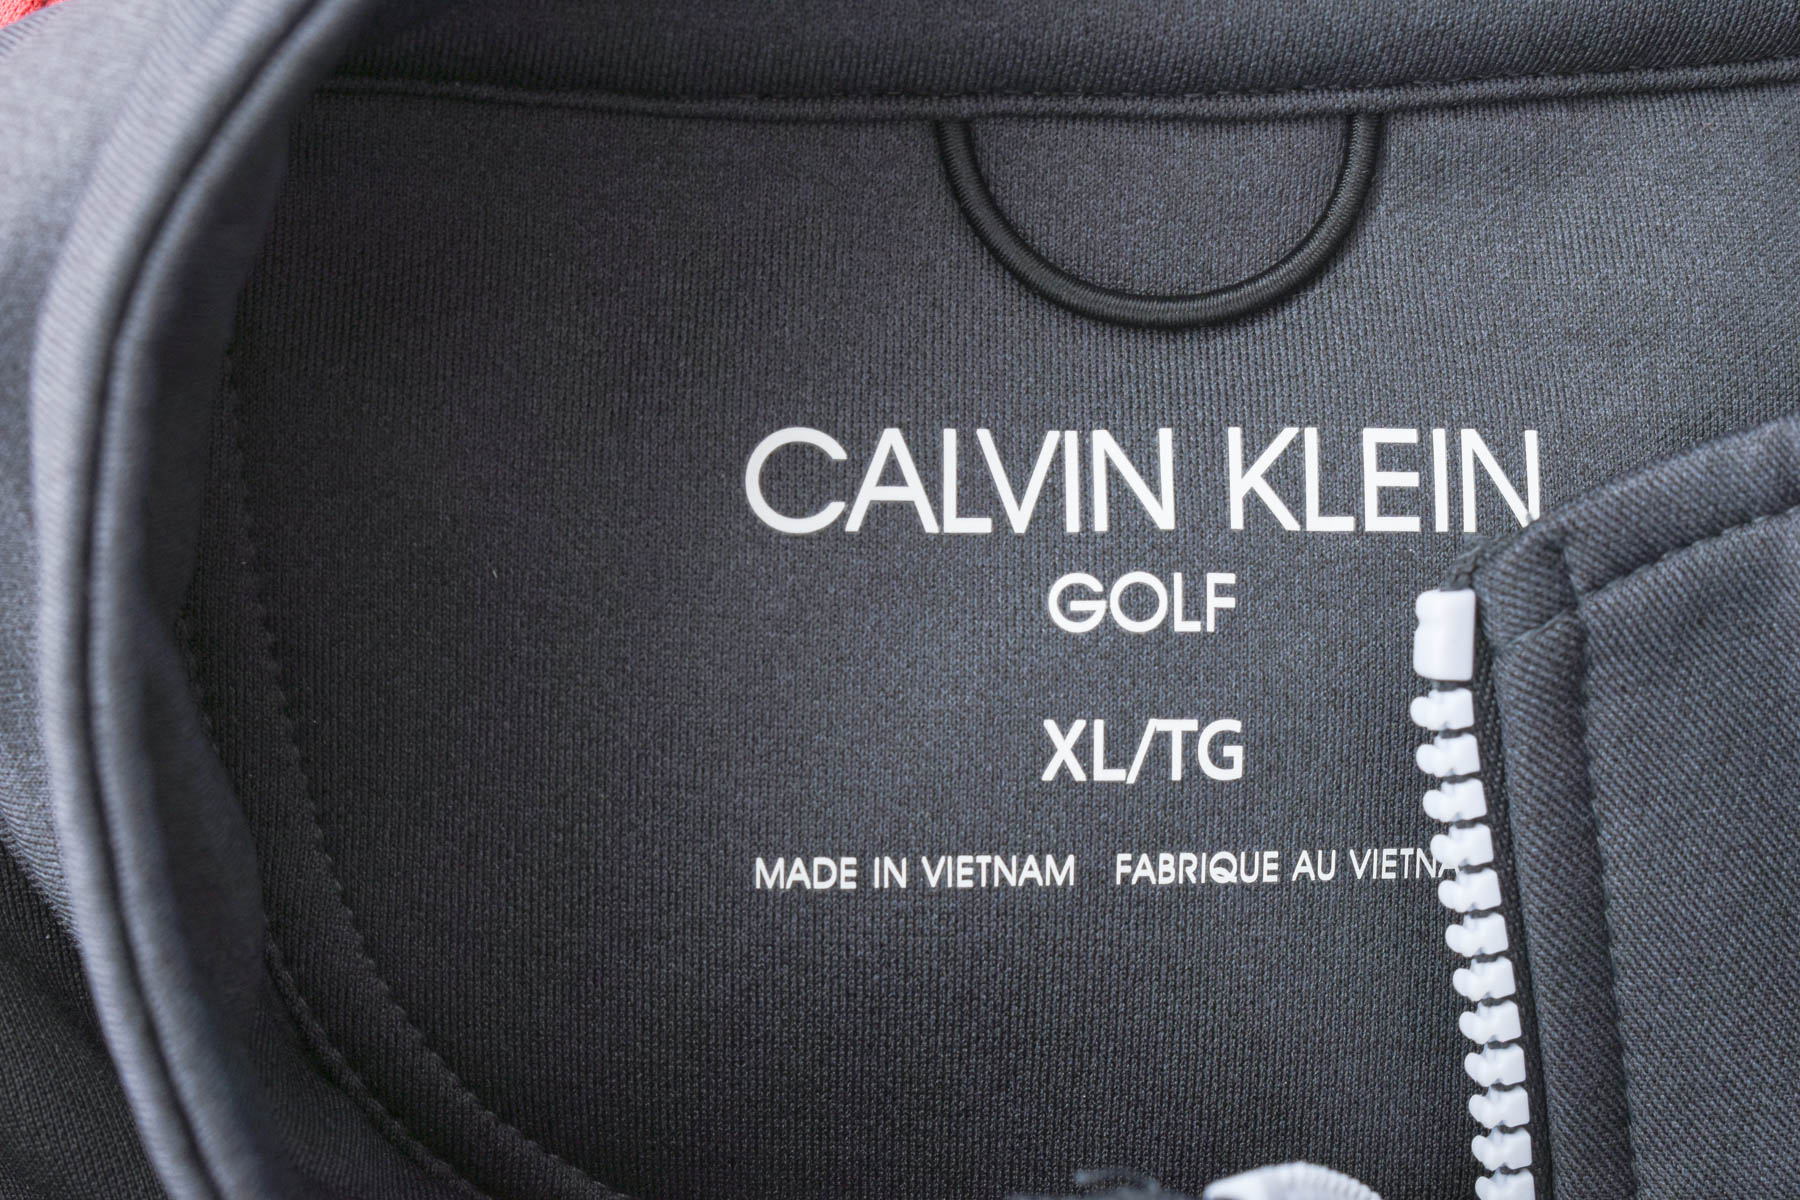 Men's blouse - Calvin Klein Golf - 2